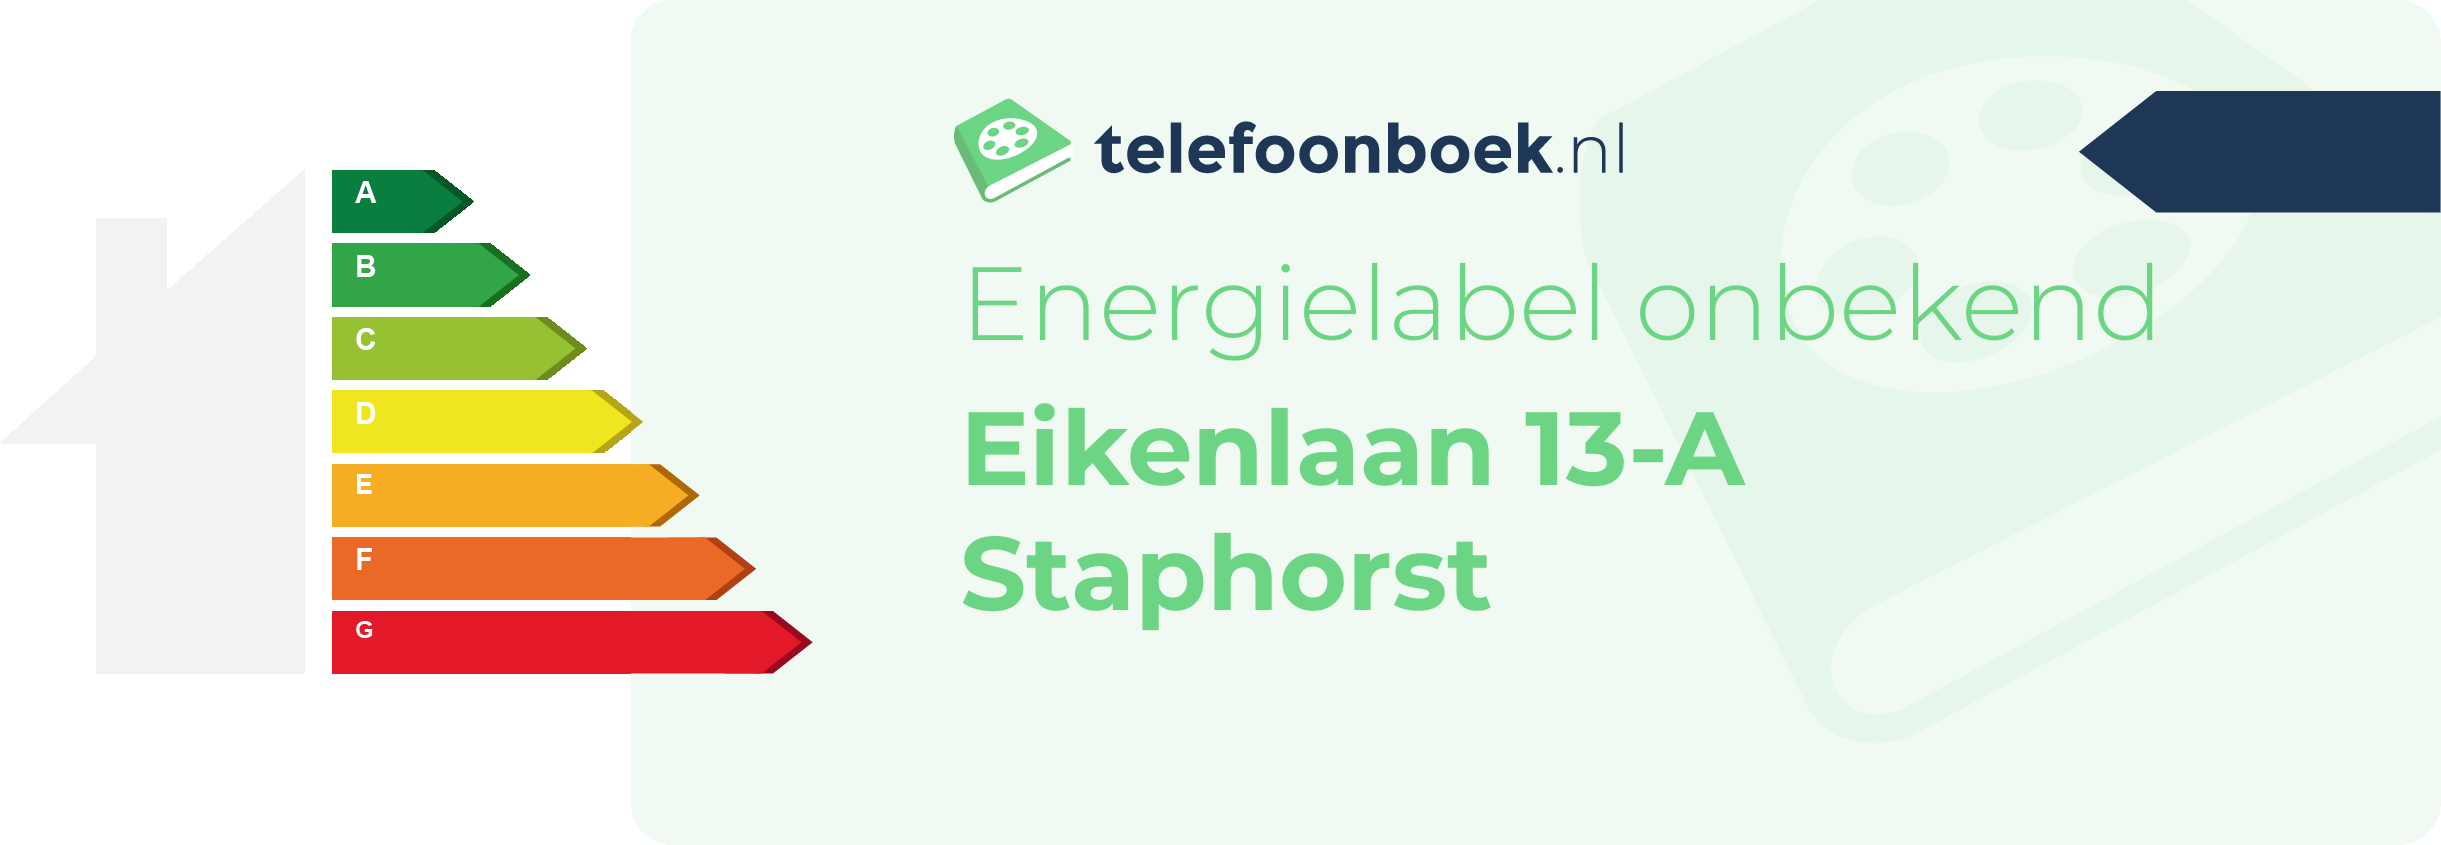 Energielabel Eikenlaan 13-A Staphorst